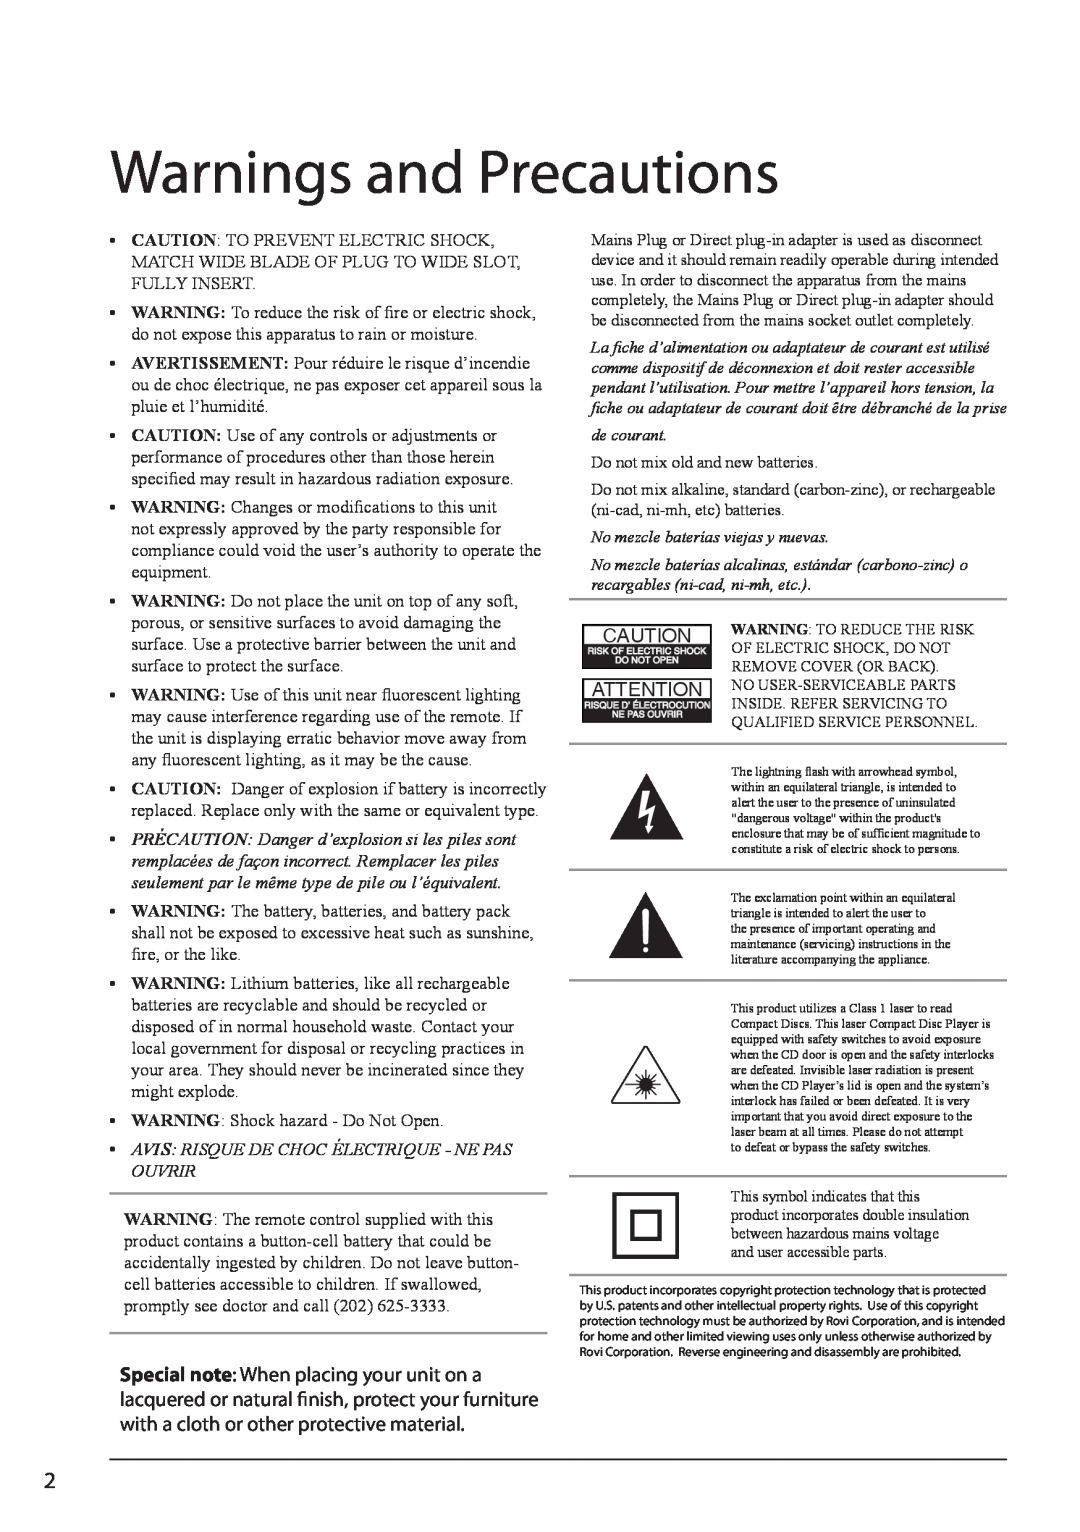 GPX HT362B manual Warnings and Precautions, Avis Risque De Choc Électrique - Ne Pas Ouvrir, de courant 